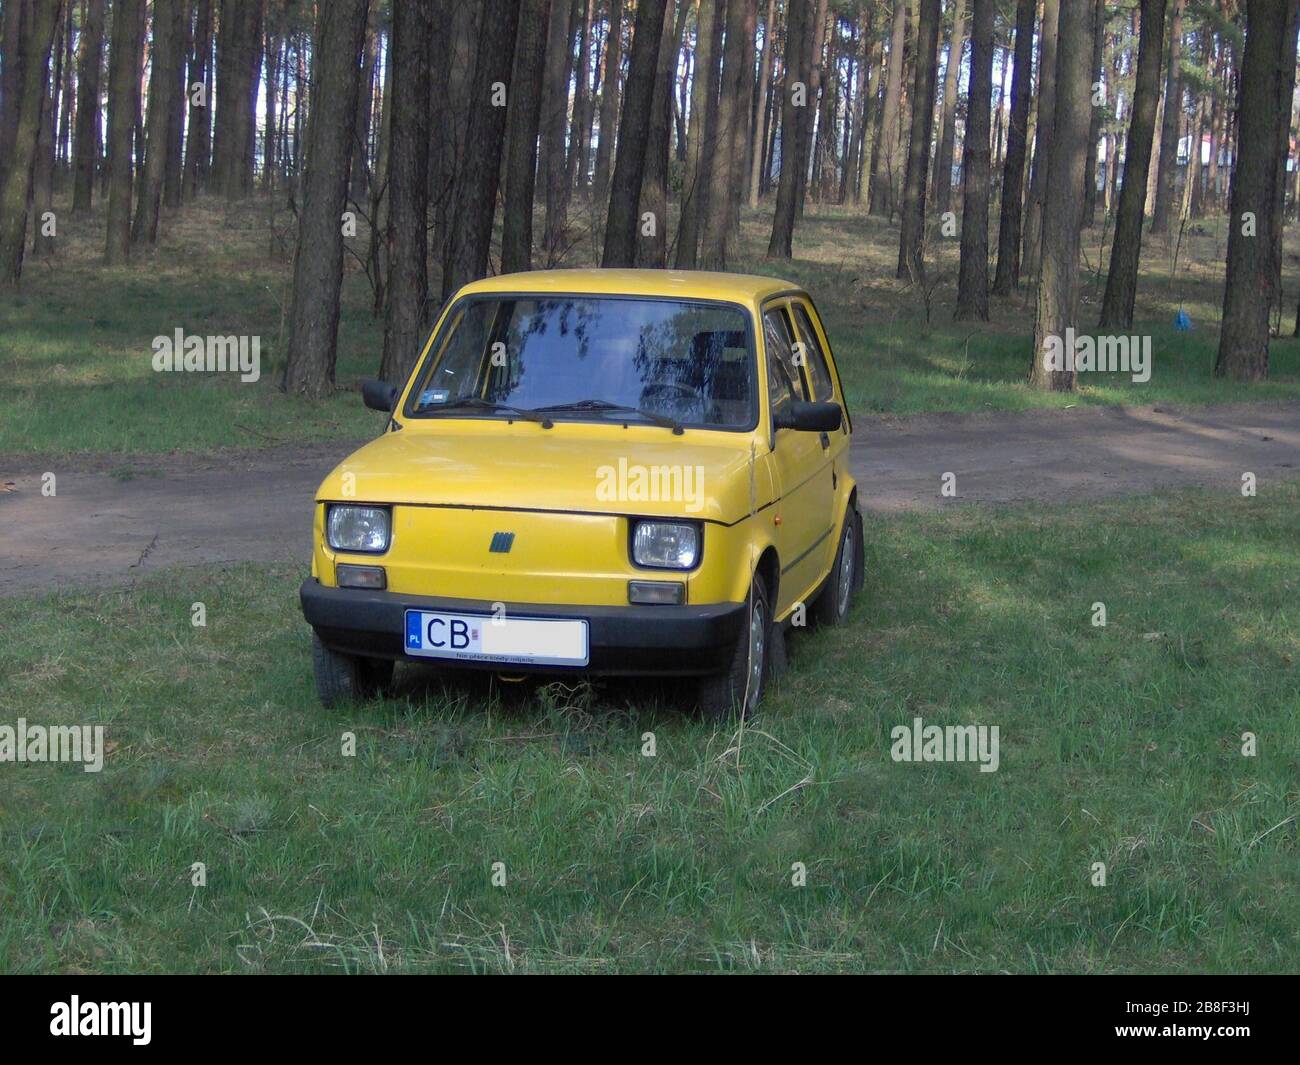 Polski: Koniec produkcji Polskiego Fiata 126p nastąpił nos wrześniu 2000 r.  Ostatnie 1000 aut, seria o nazwie limitowana Fiat 126 Happy End w  specjalnym żółtym (500 sztuk) oraz czerwonym sztuk kolorze (500).